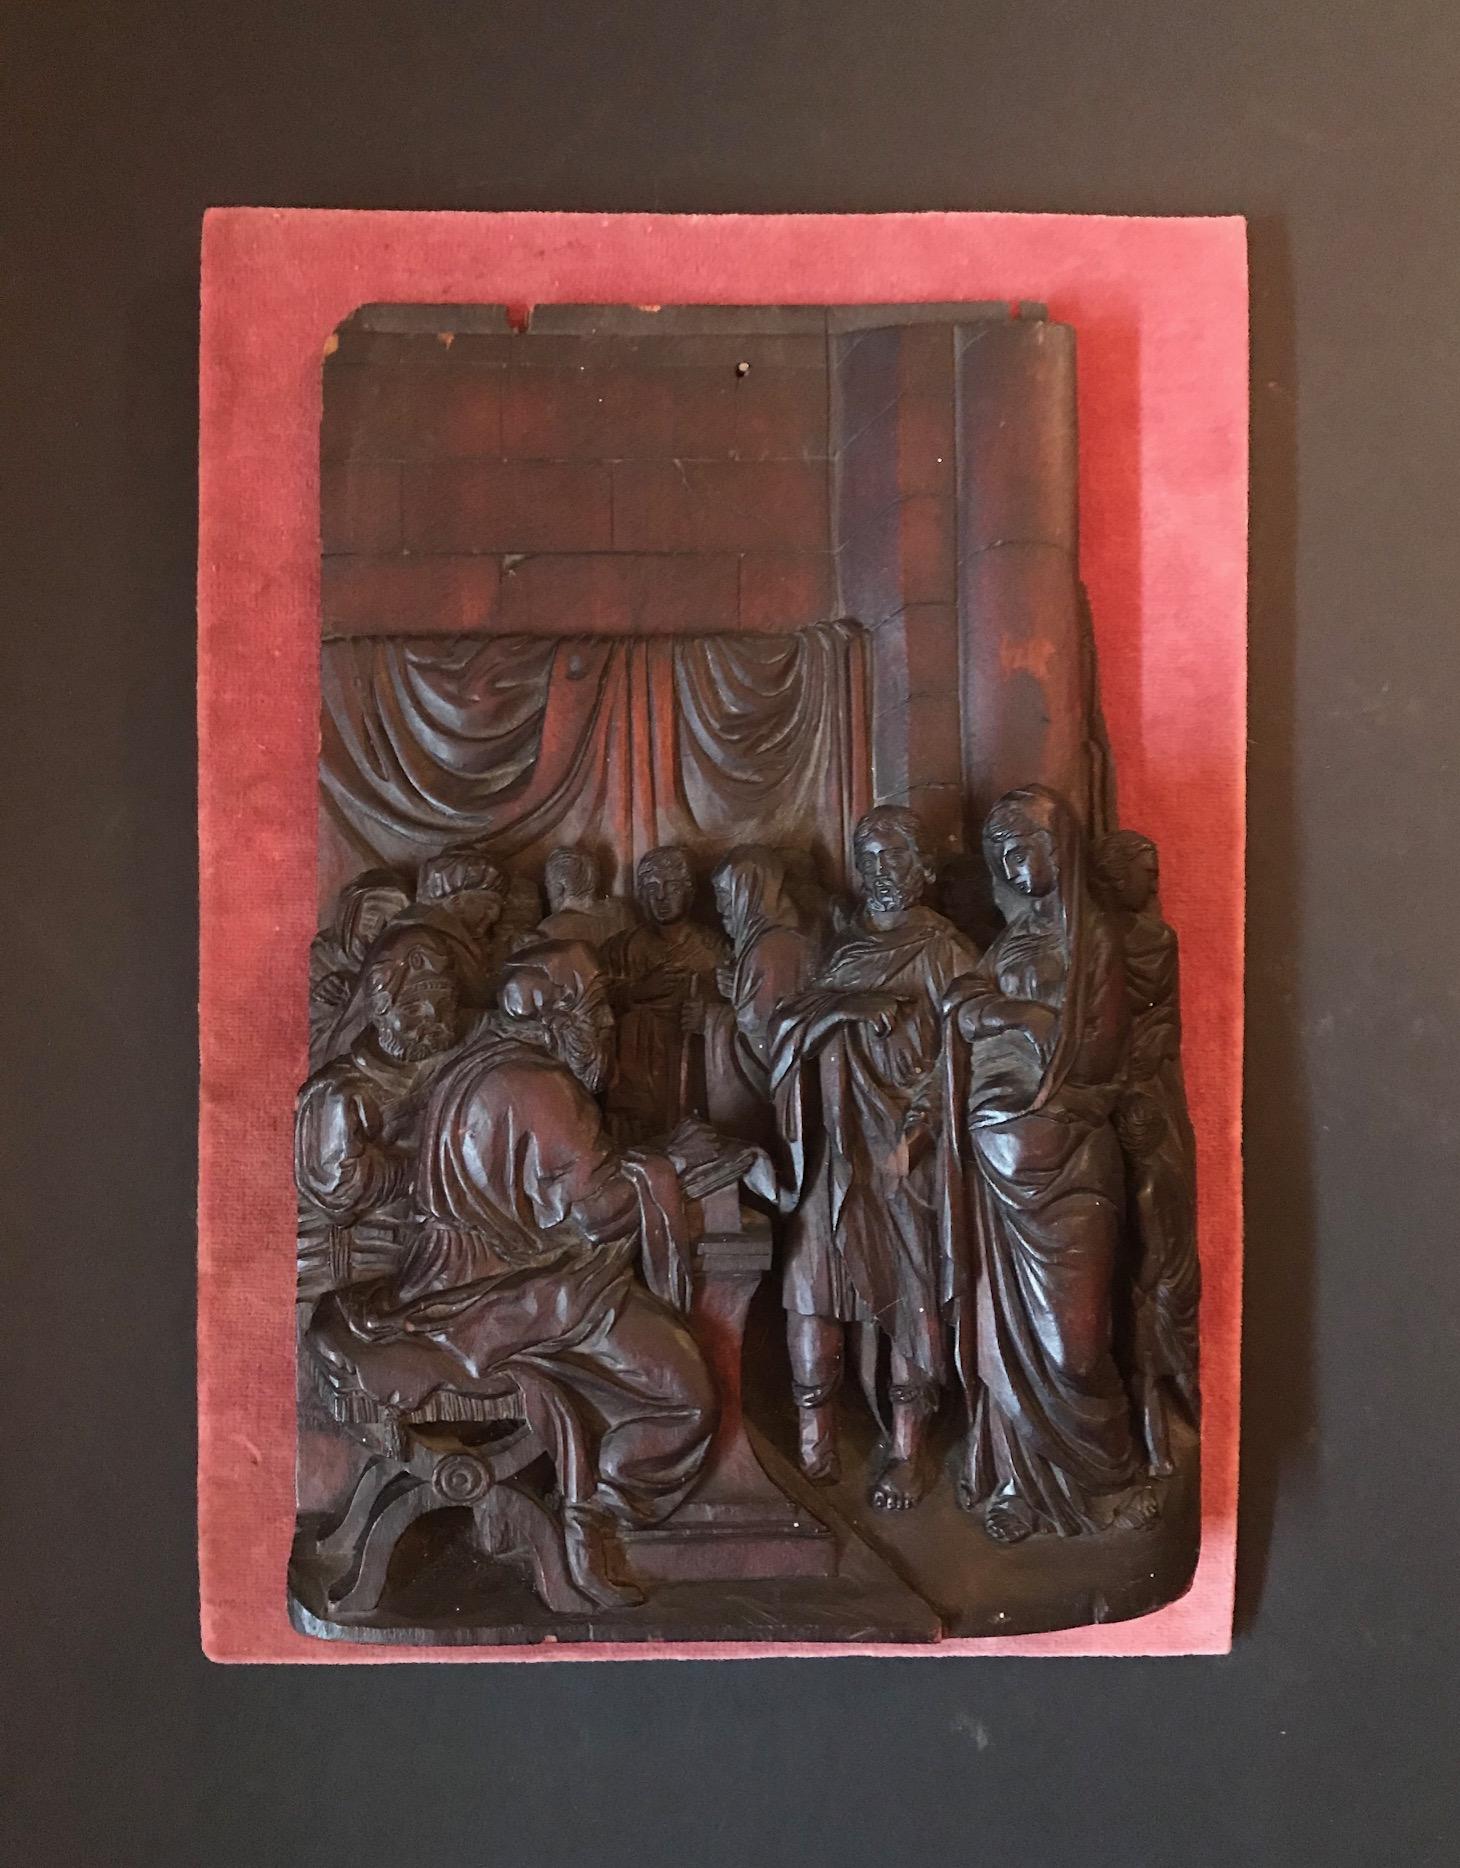 Diese seltene, in Hochrelief geschnitzte Tafel aus dem 17. Jahrhundert hat Museumsqualität und ist zweifellos das Werk eines bedeutenden flämischen Schnitzers. Es stellt die biblische Szene von Maria und Josef in Bethlehem bei der Volkszählung dar.